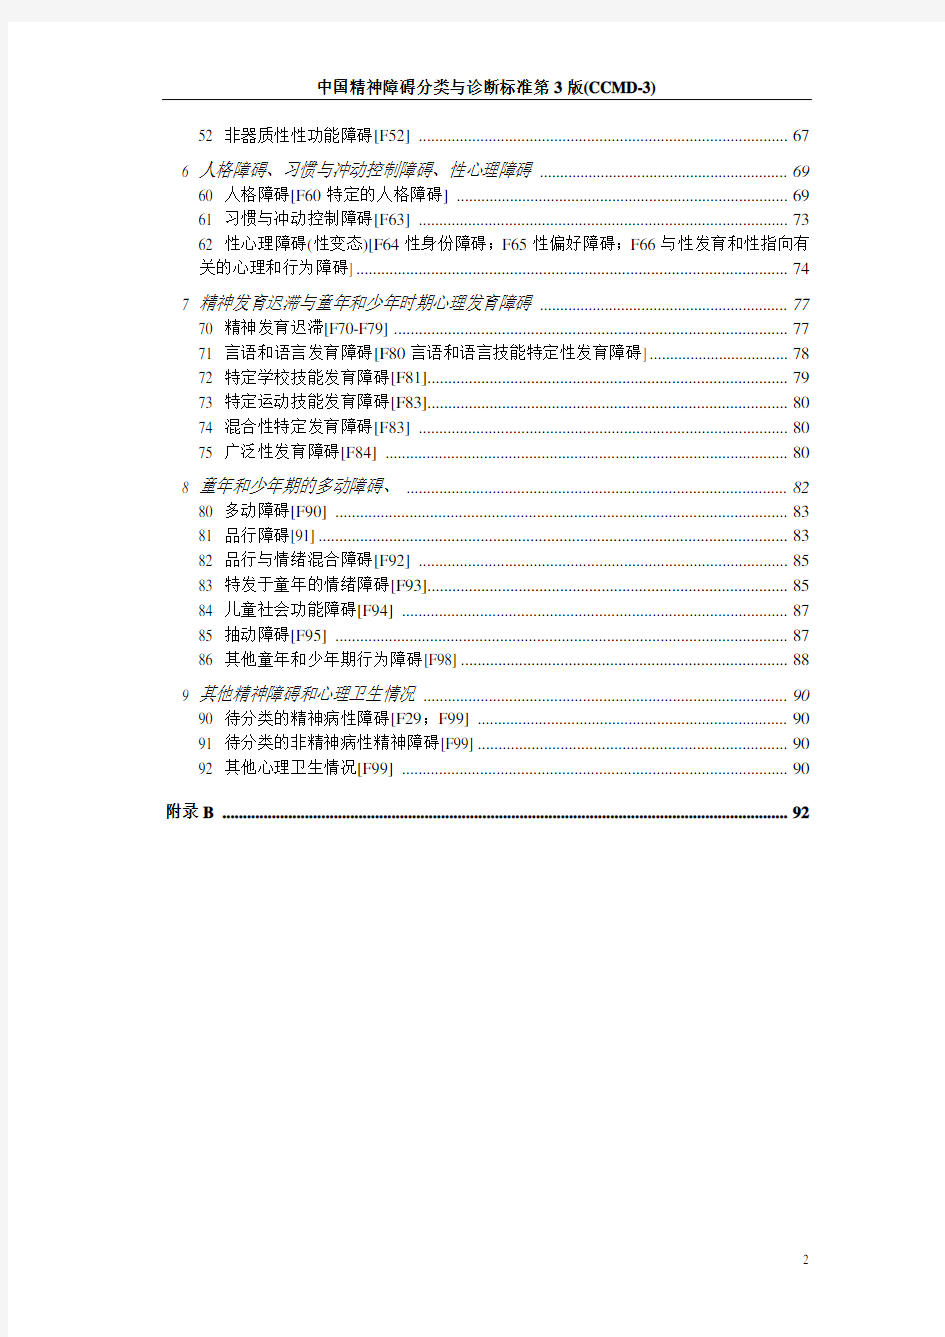 中国精神障碍分类与诊断标准第3版(CCMD-3)